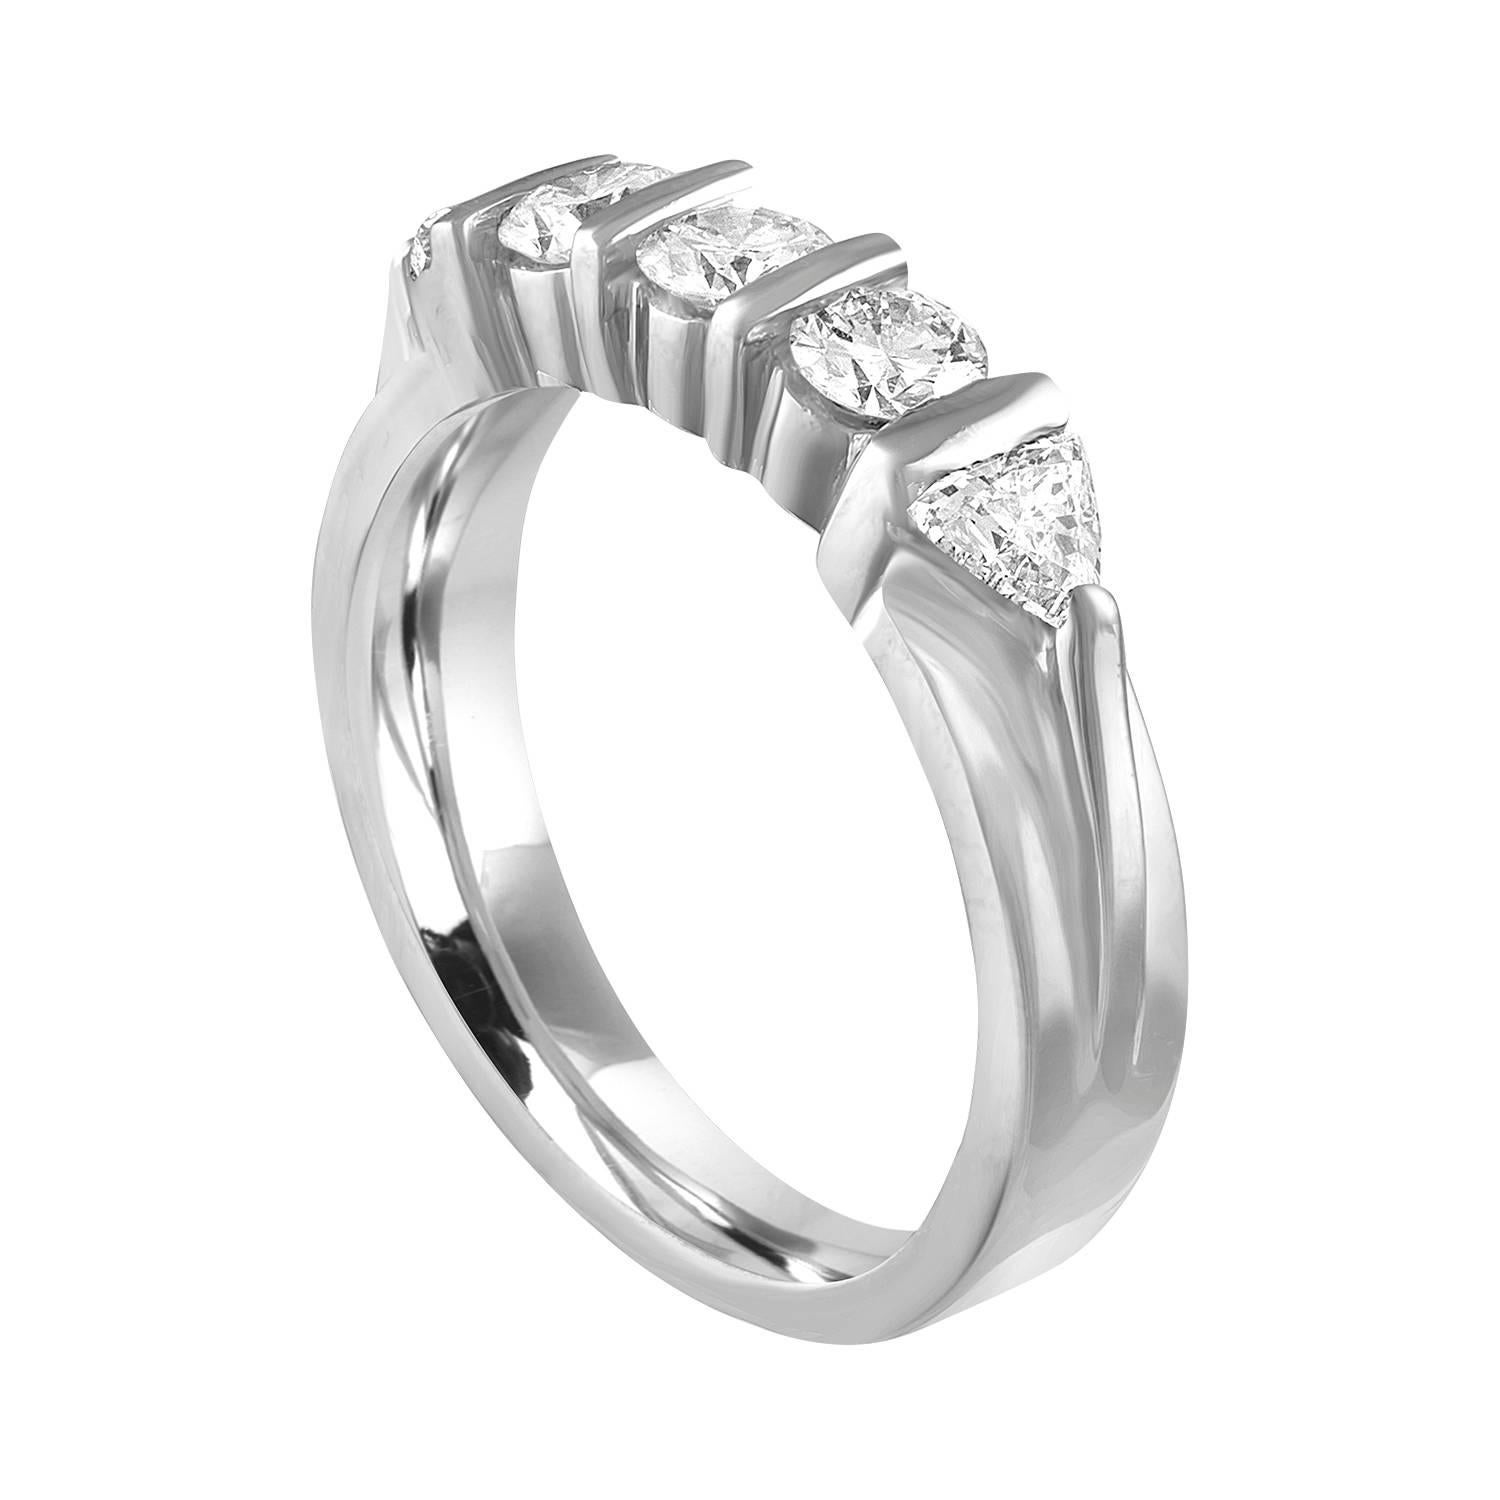 Sehr schöner halber Diamantbandring.
Der Ring ist aus Platin 950.
Es gibt 3 Diamanten im Rundschliff.
Es gibt 2 Billionen geschliffene Diamanten.
Es gibt 0,80 Karat in Diamanten G/H VS.
Der Ring ist eine Größe 6,00, sizable.
Das Band ist 4,47 mm